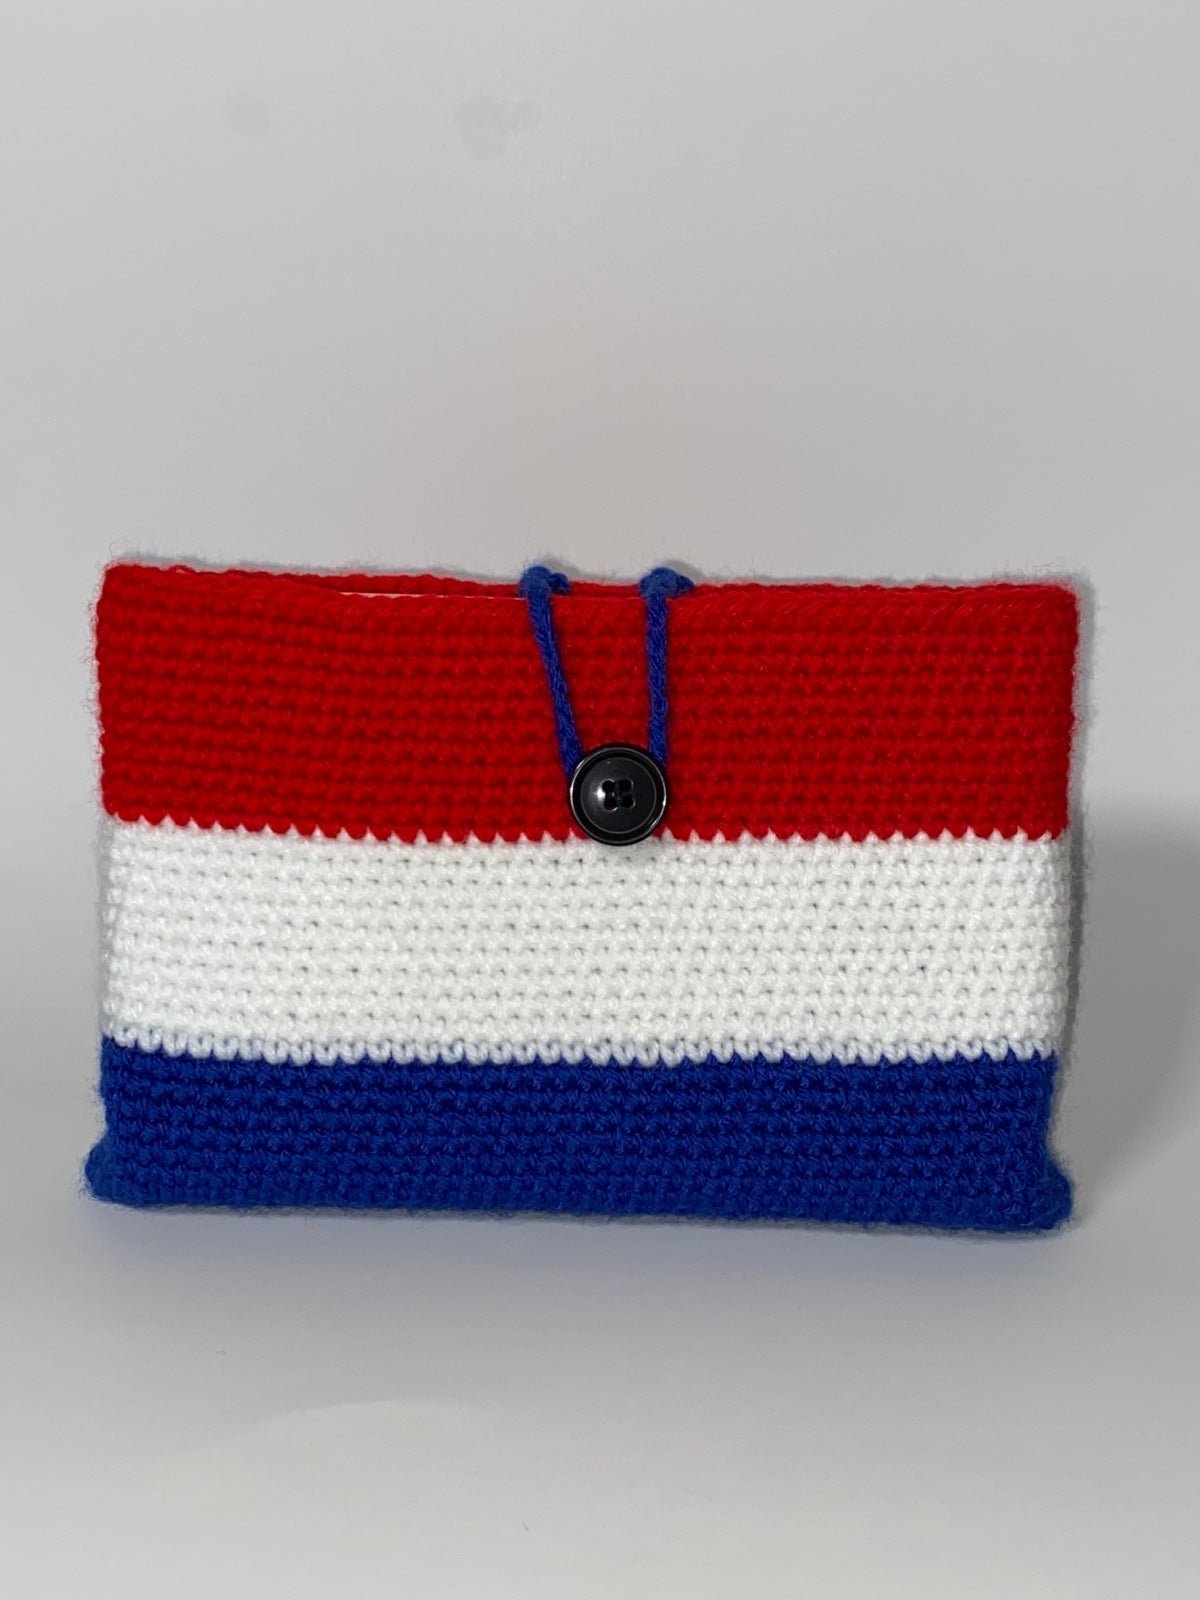 Crochet tablet or book sleeve BiZ8duyEt